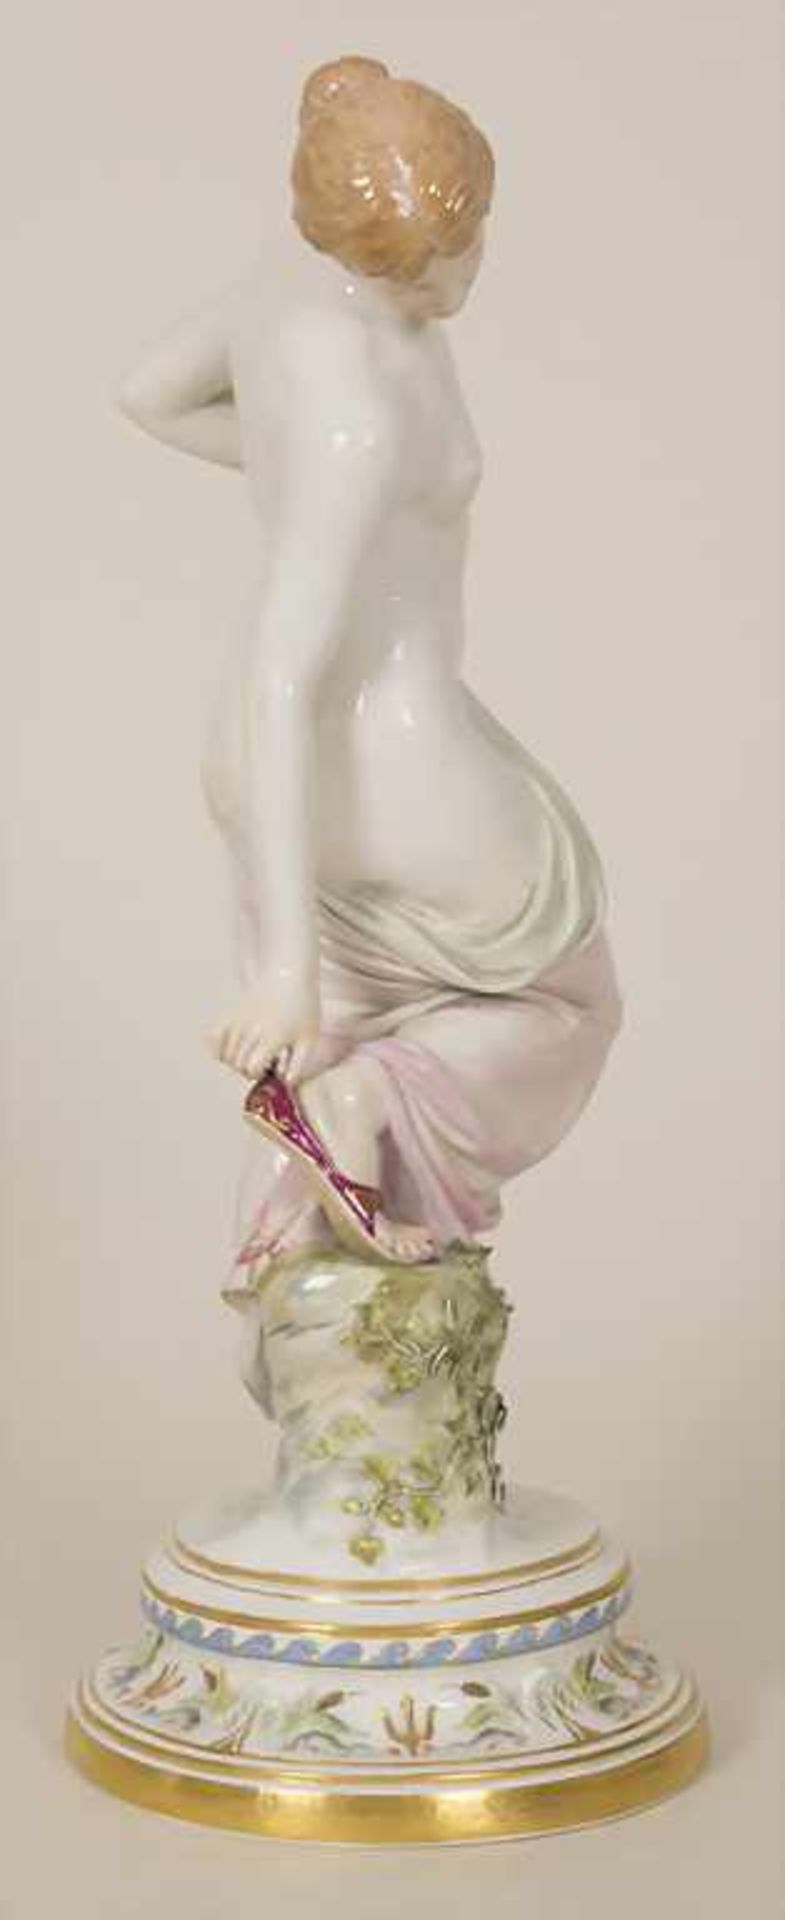 Porzellanfigur 'Nach dem Bade' / A porcelain figure 'After the bath', Robert Ockelmann (1849-1915) - Bild 2 aus 9